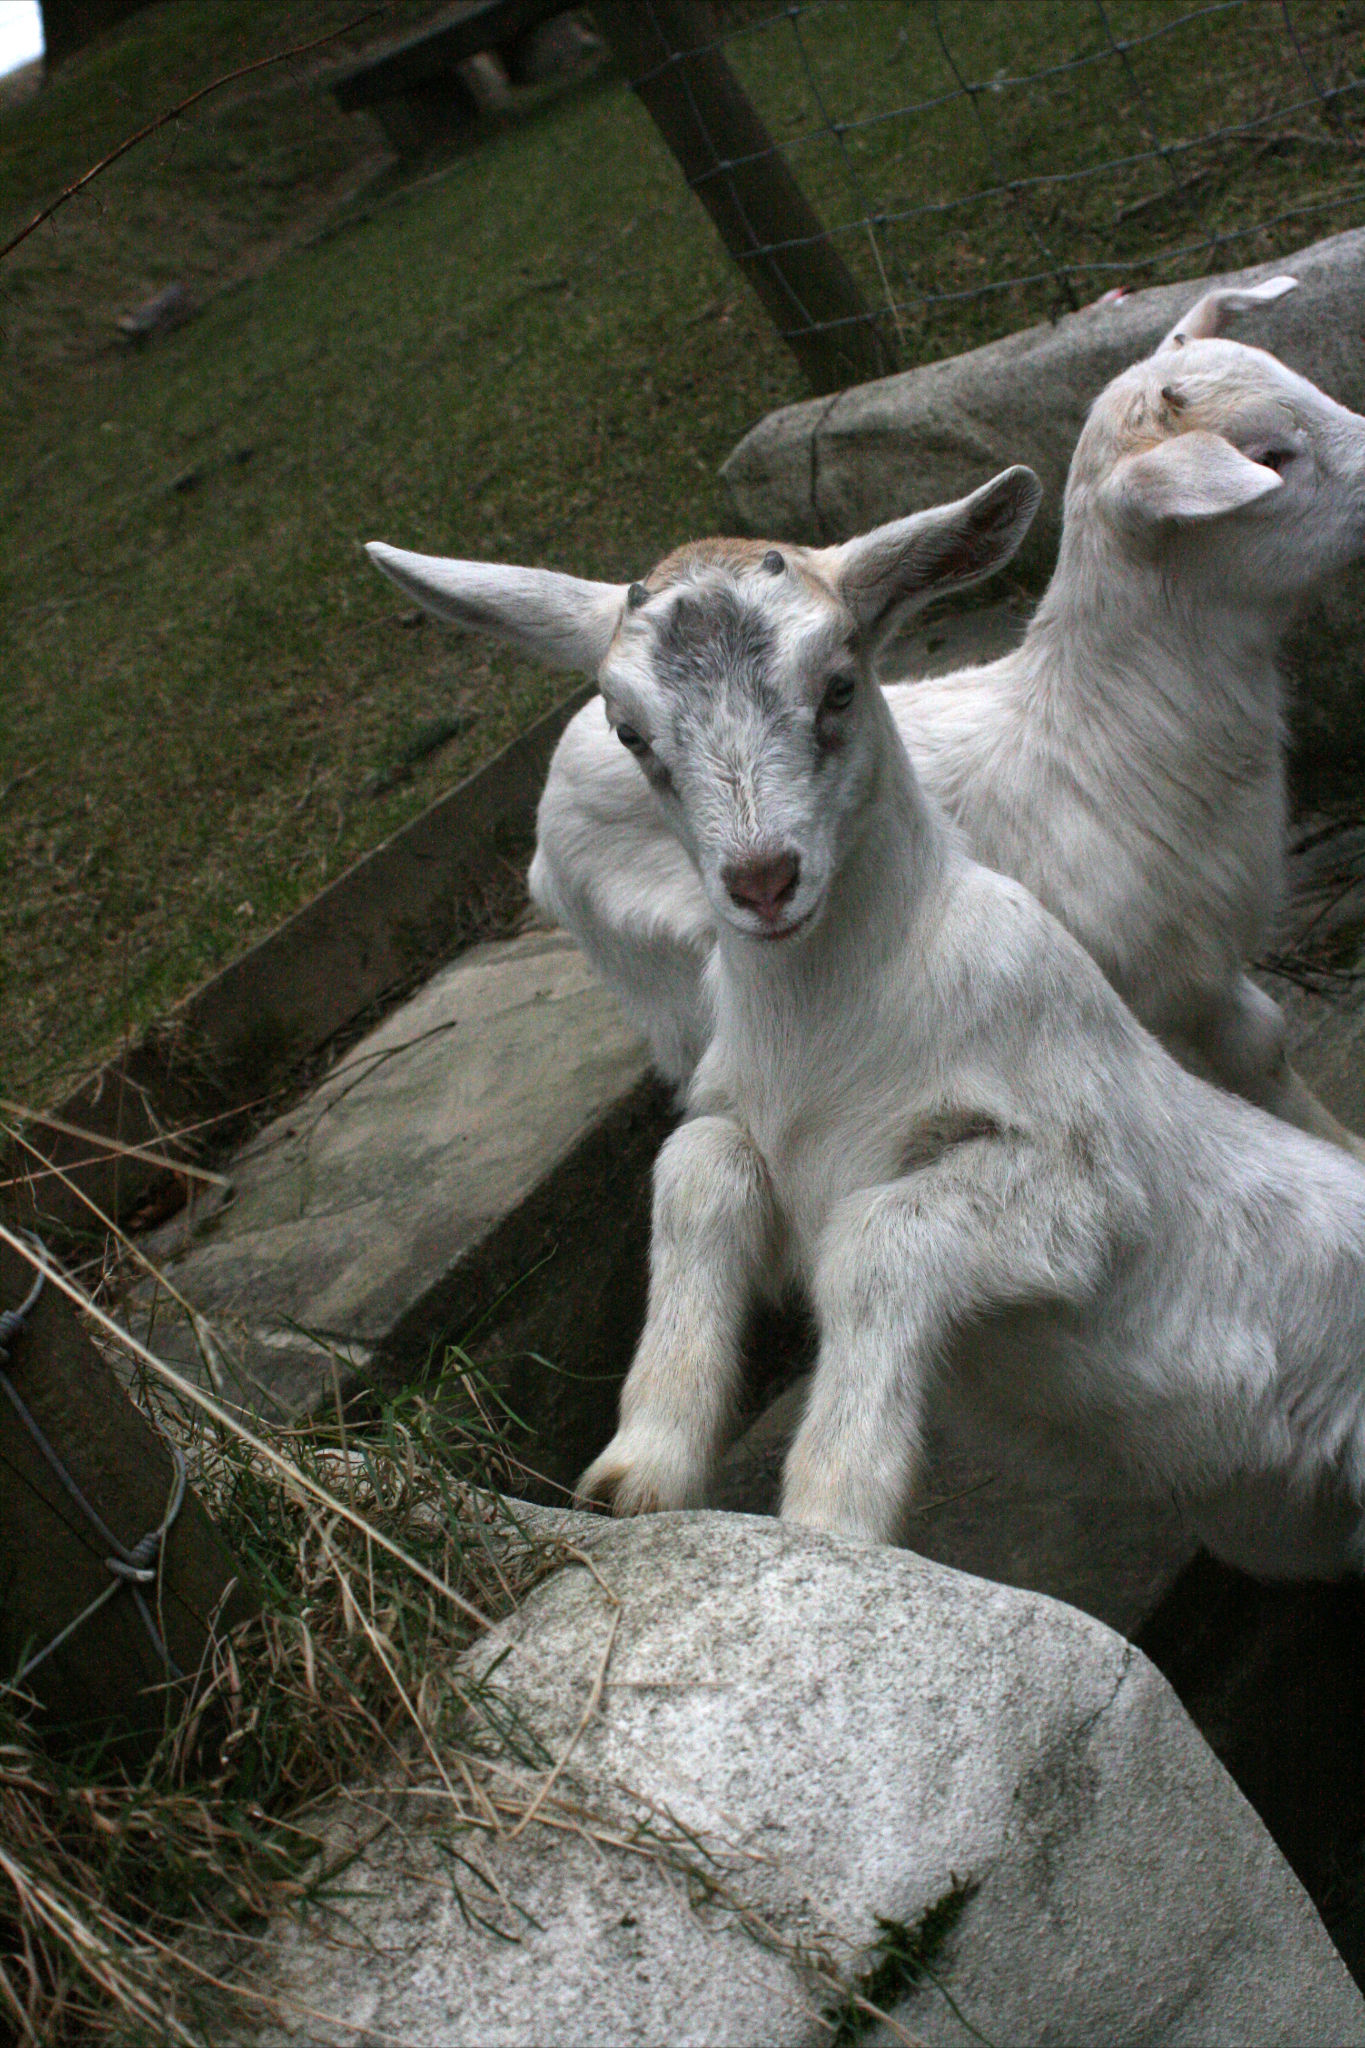 Goat kids